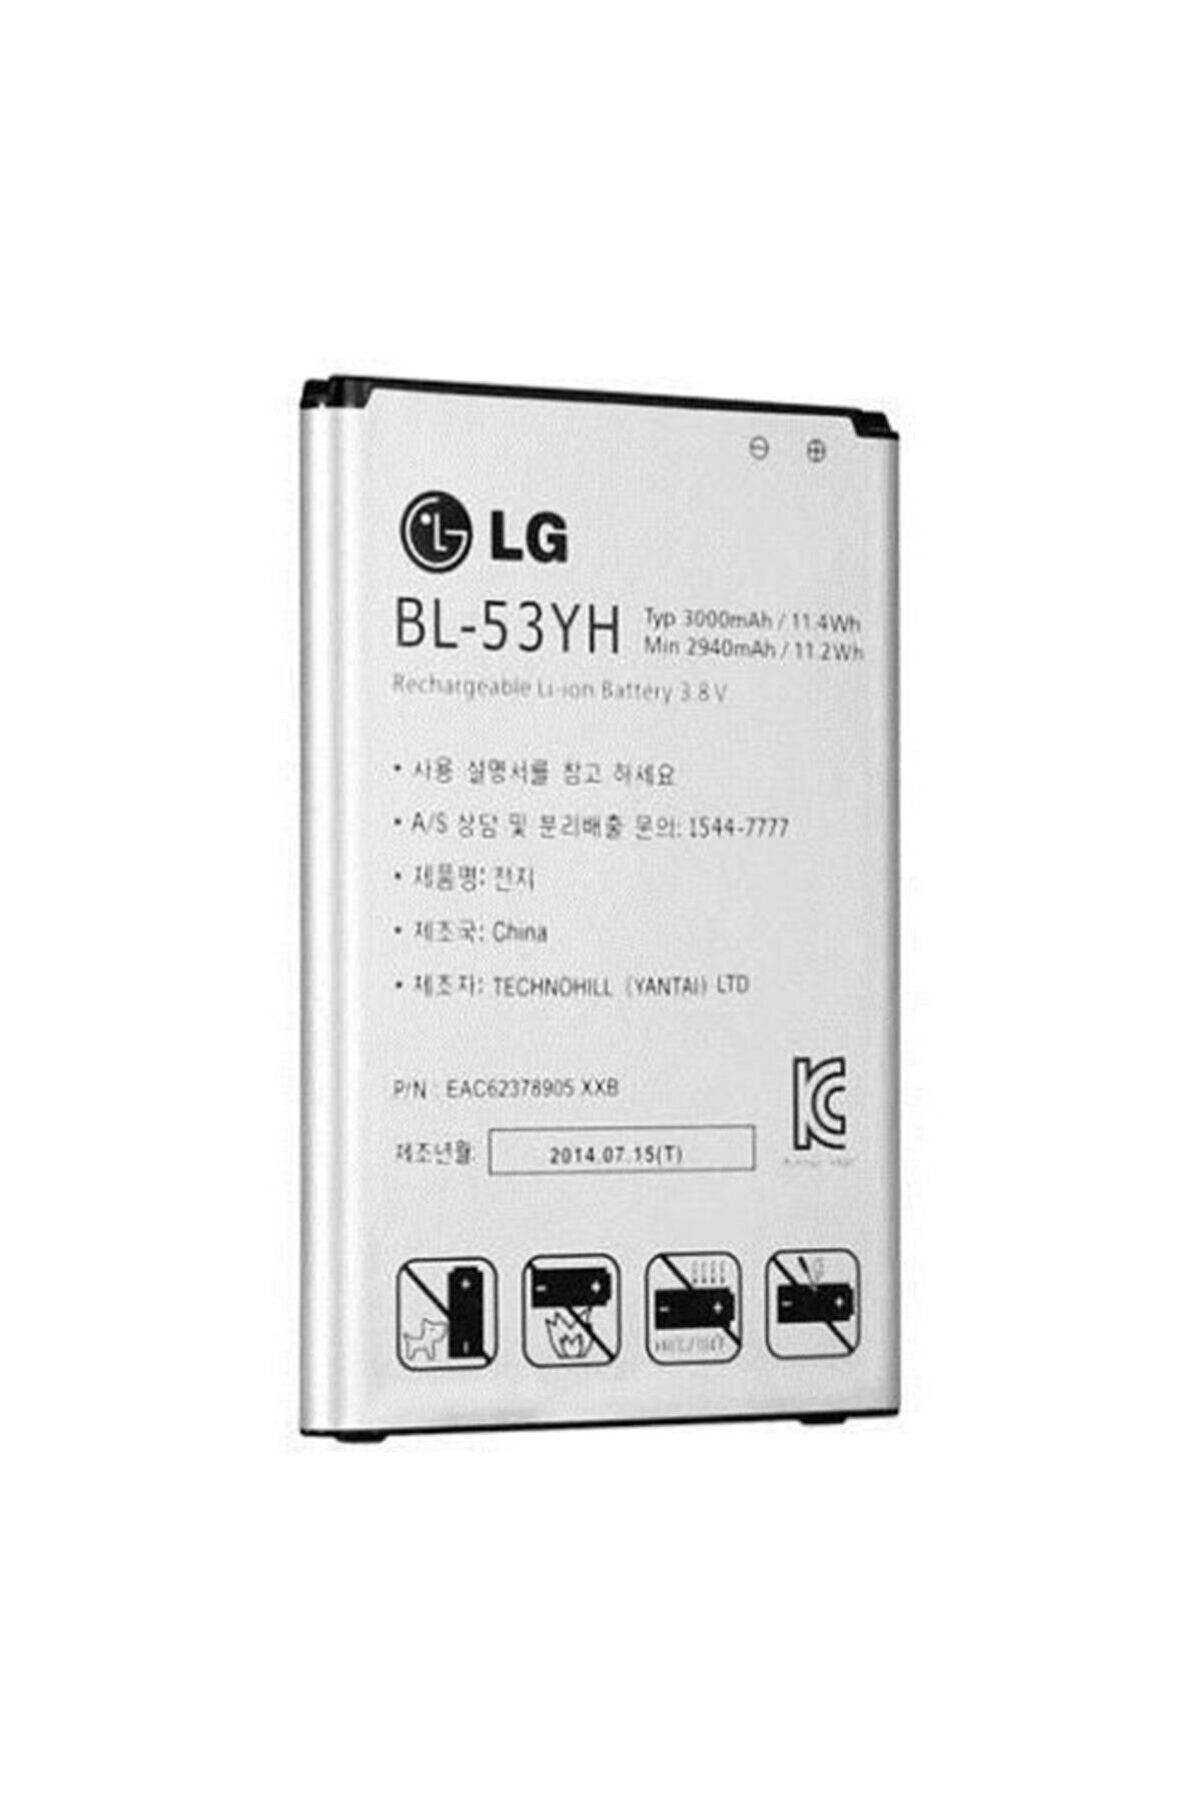 LG G3 Bl-53yh Batarya Pil